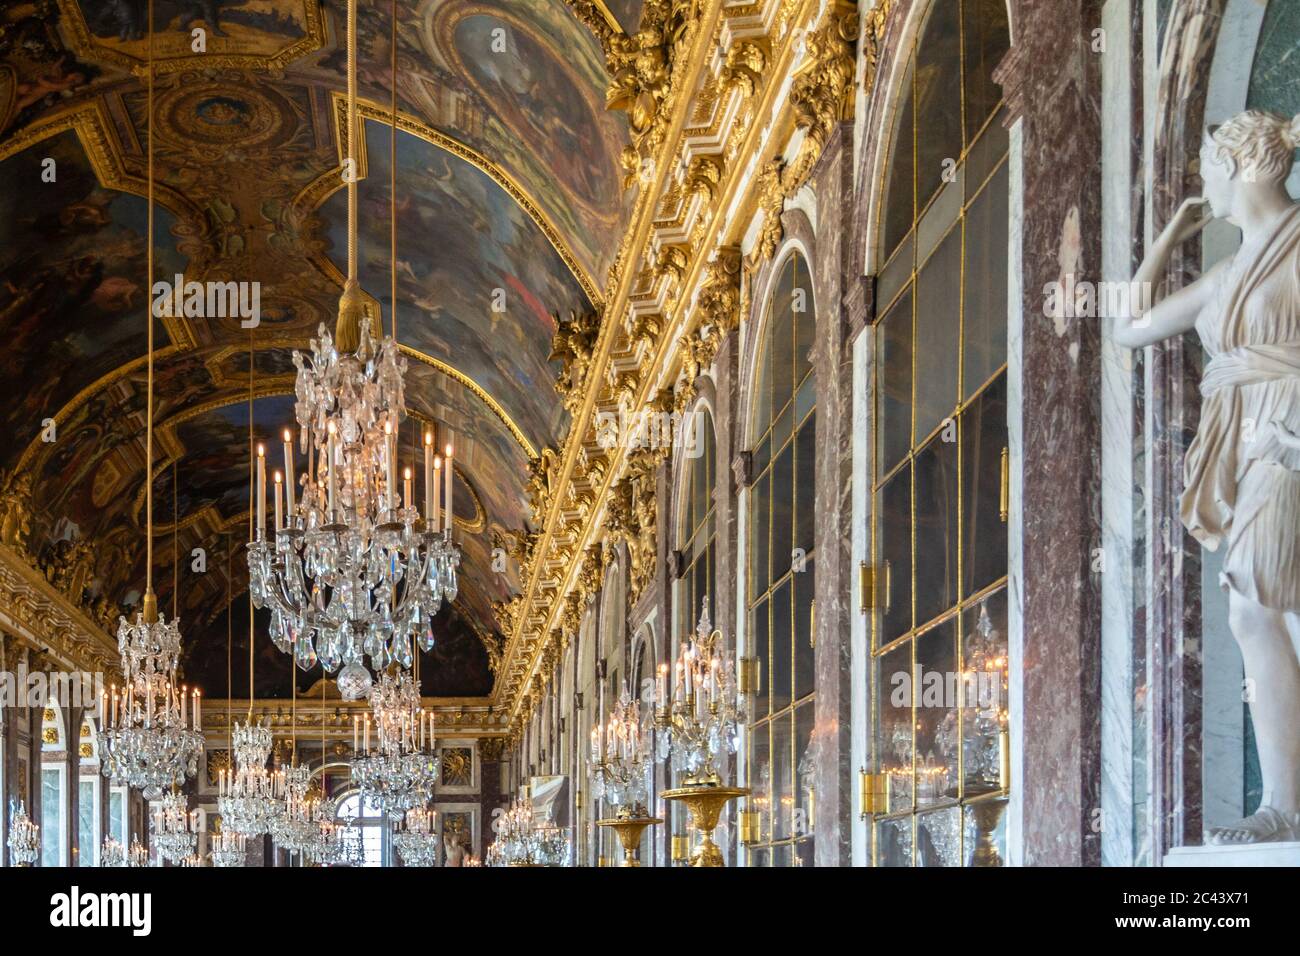 Personnes visitant la salle des glaces du château de Versailles Banque D'Images